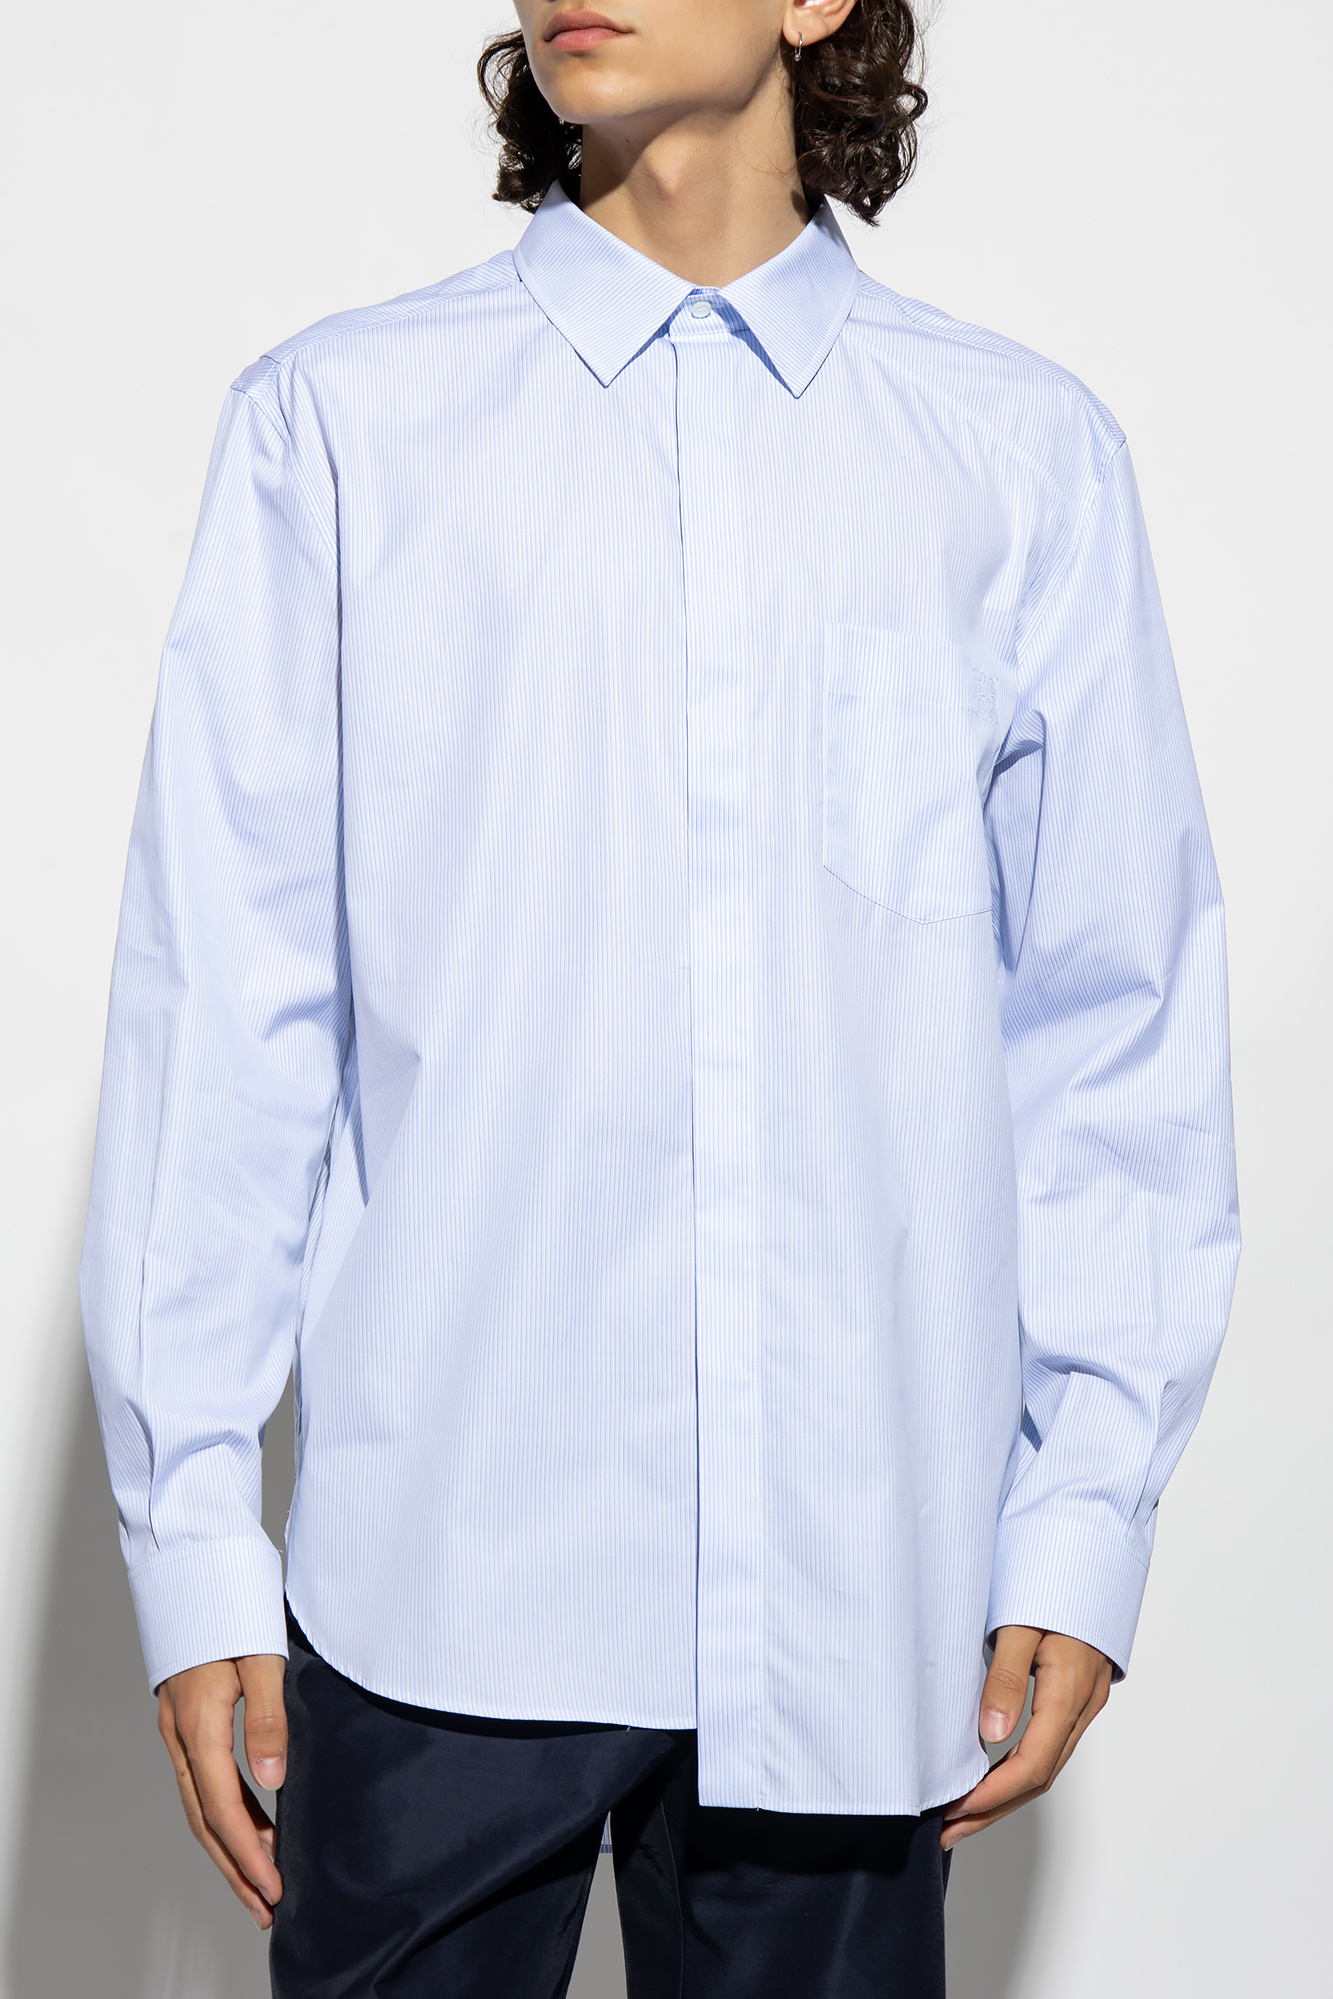 Loewe Pinstriped shirt